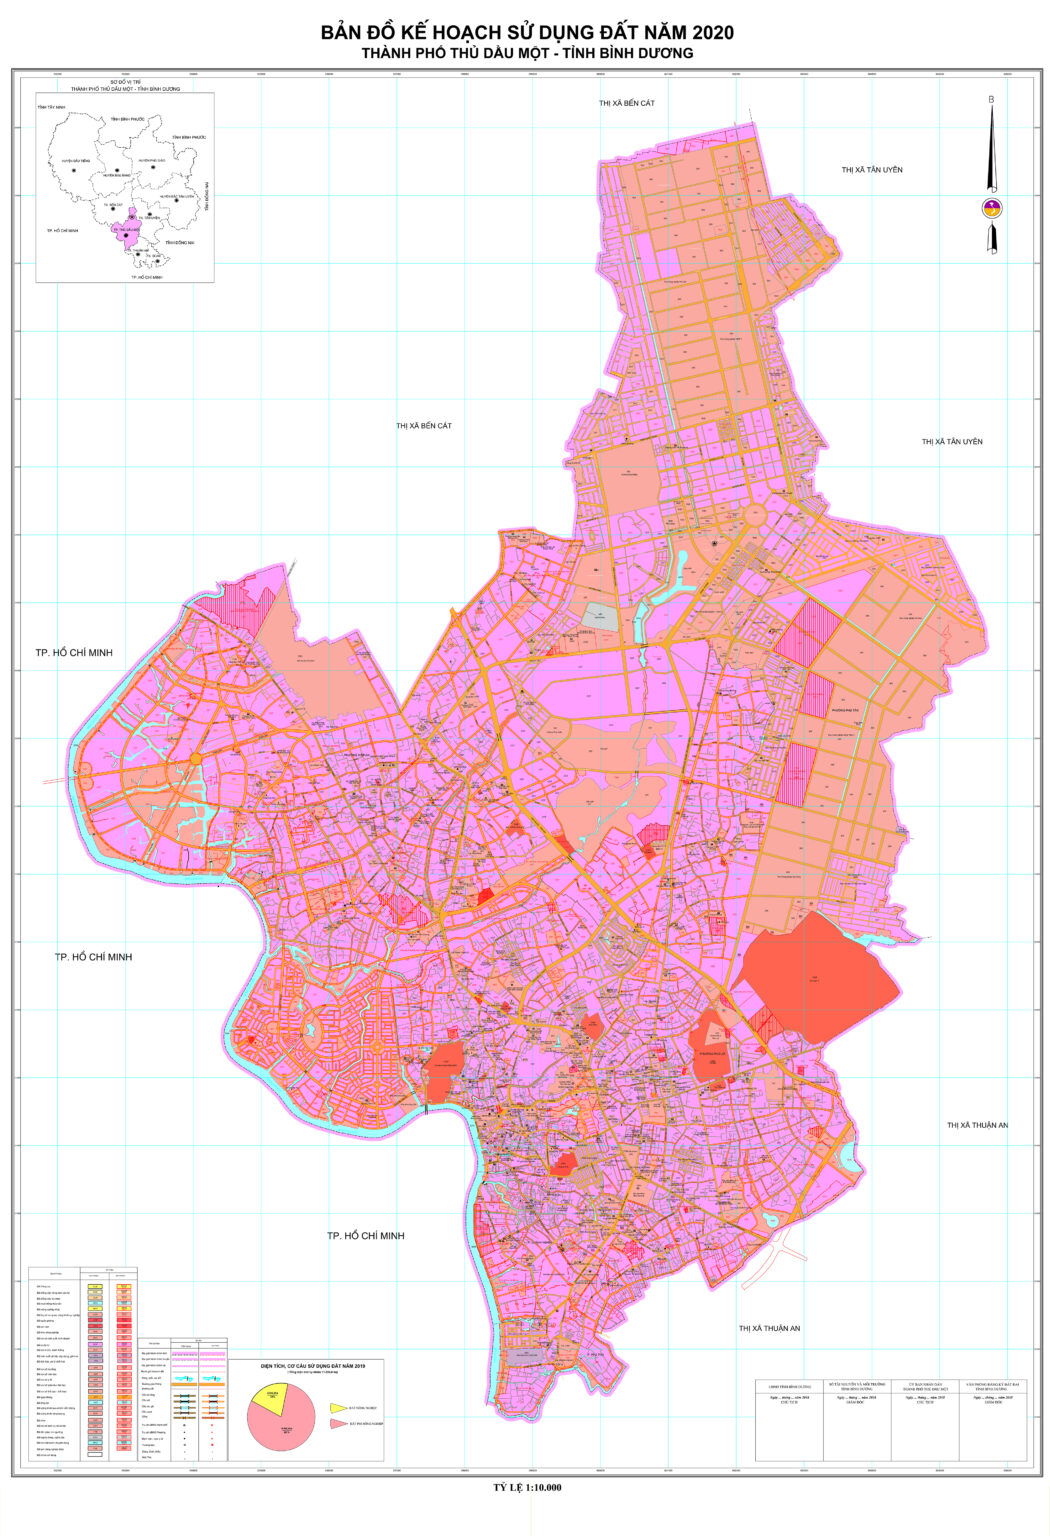 Bản đồ quy hoạch sử dụng đất thành phố Thủ Dầu Một